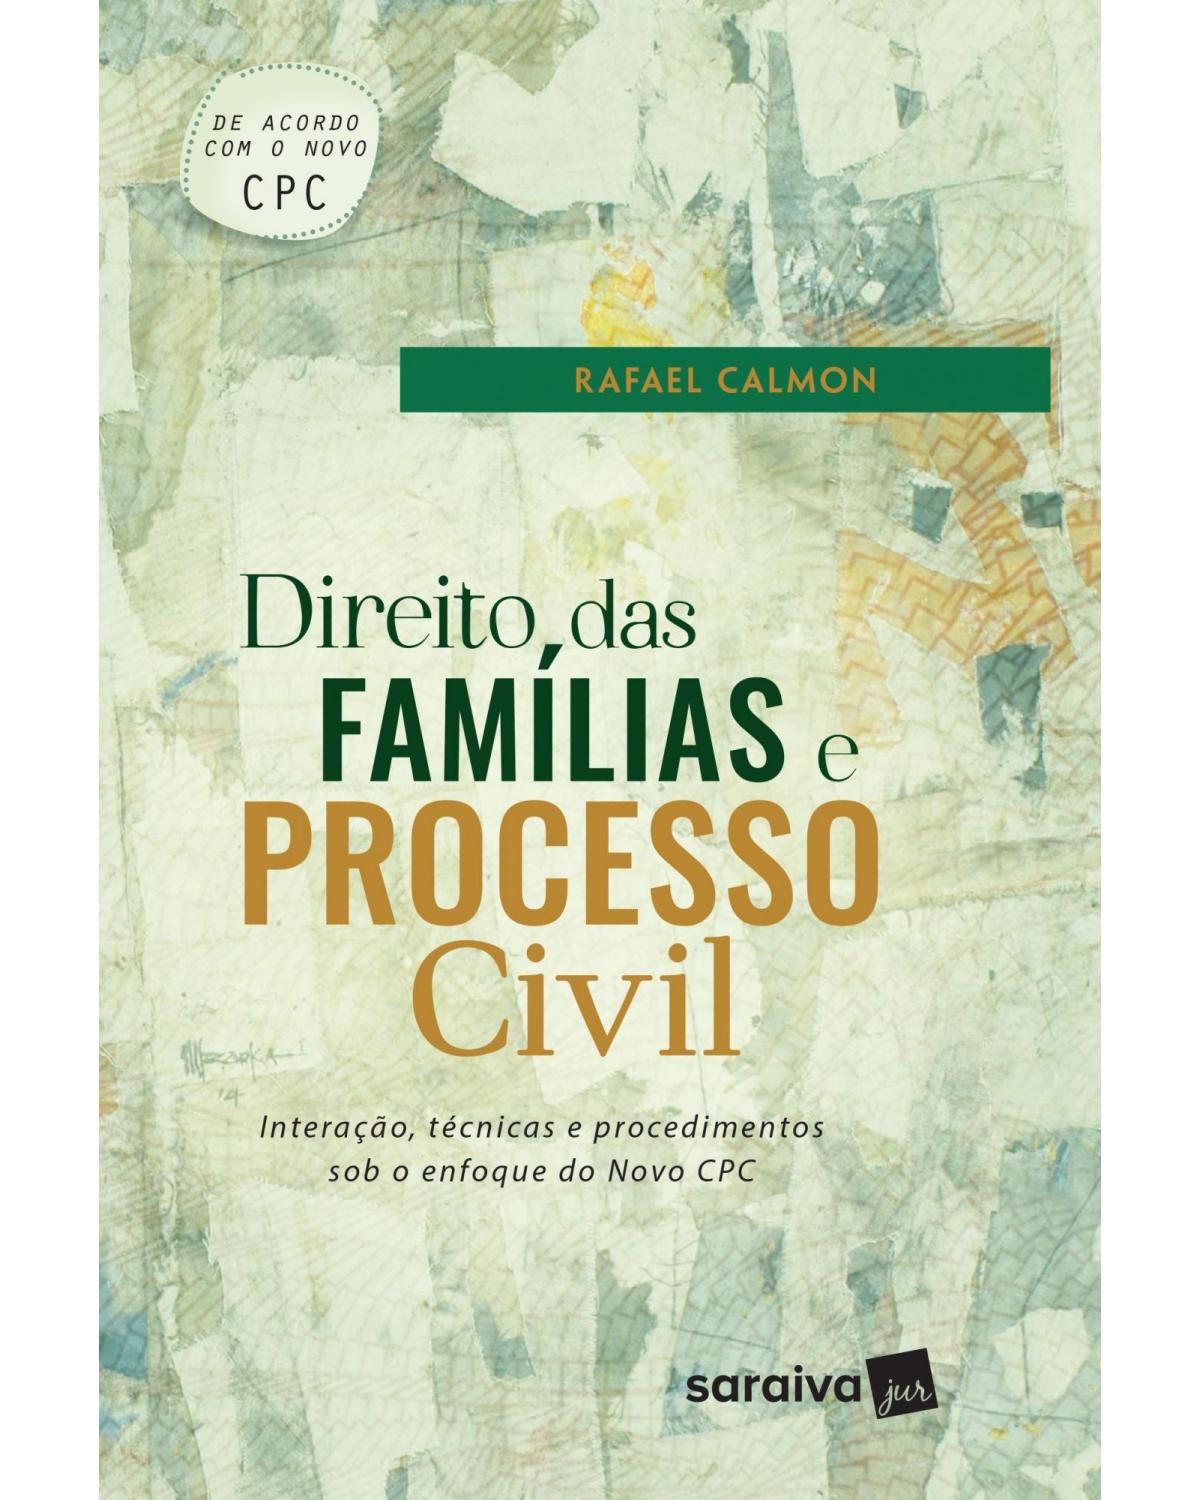 Direito das famílias e processo civil - interação, técnicas e procedimentos sob o enfoque do novo CPC - 1ª Edição | 2017